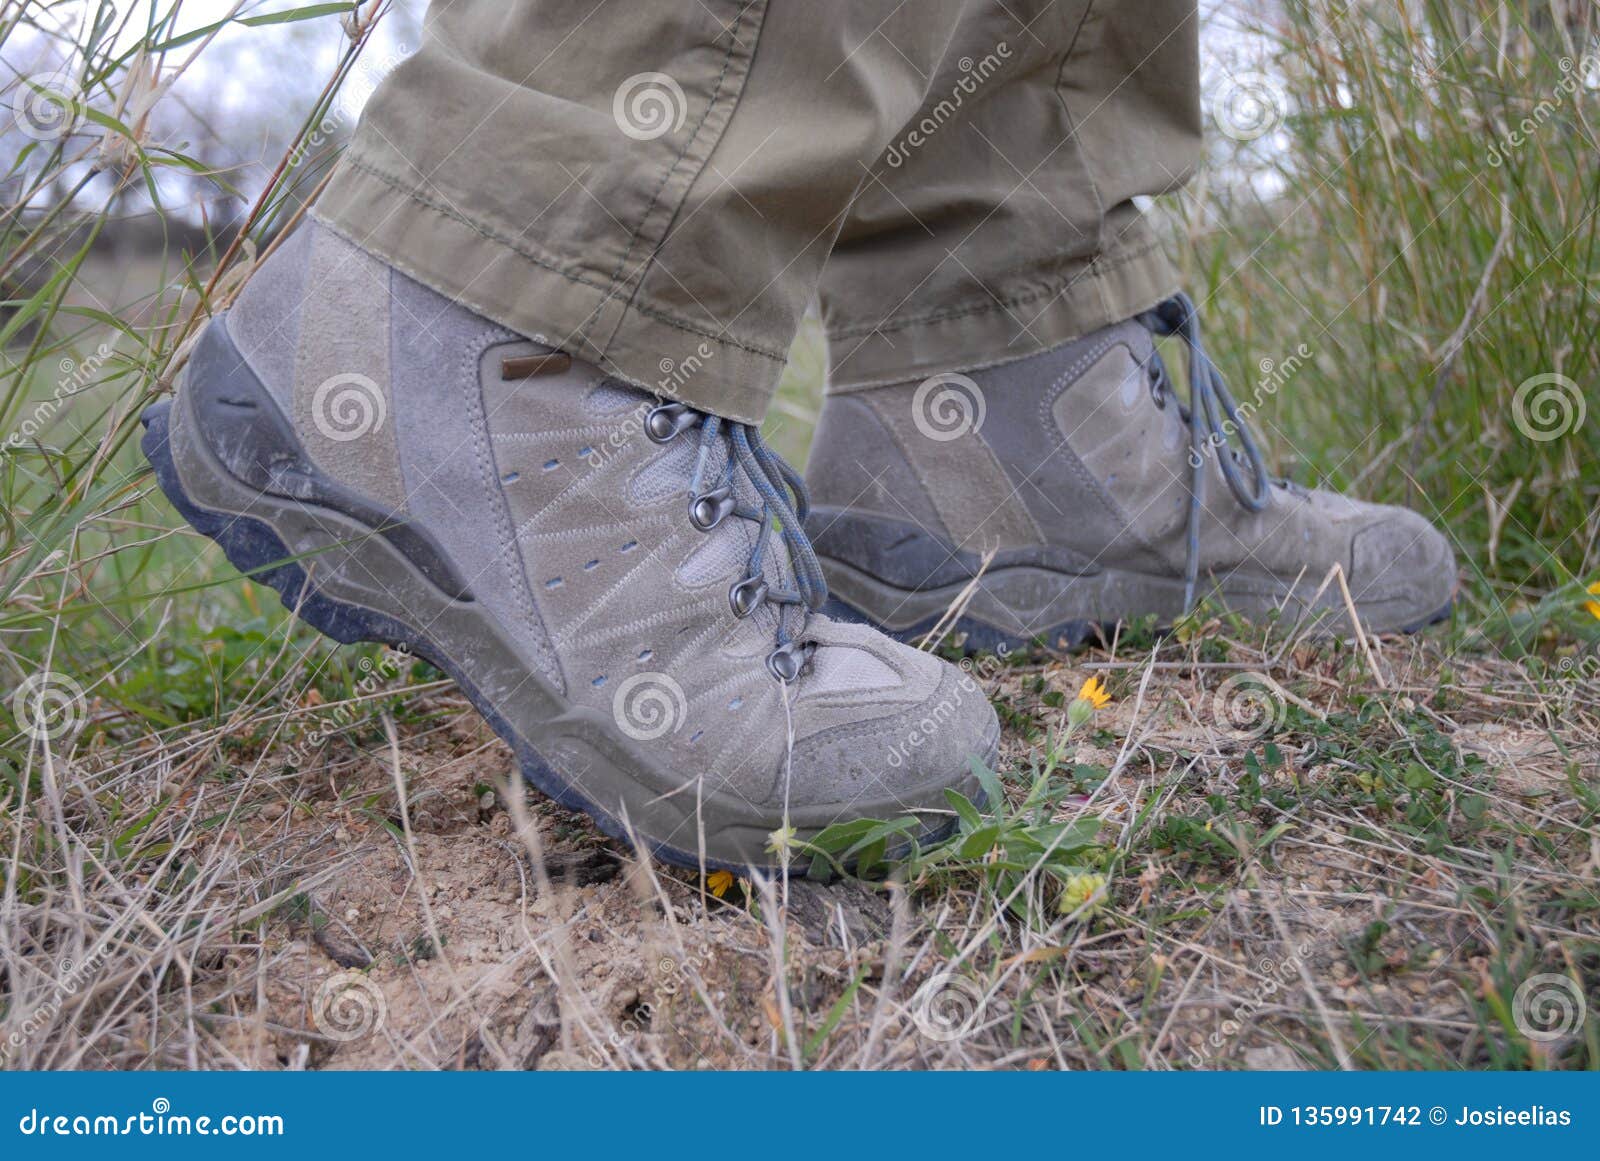 sturdy walking boots